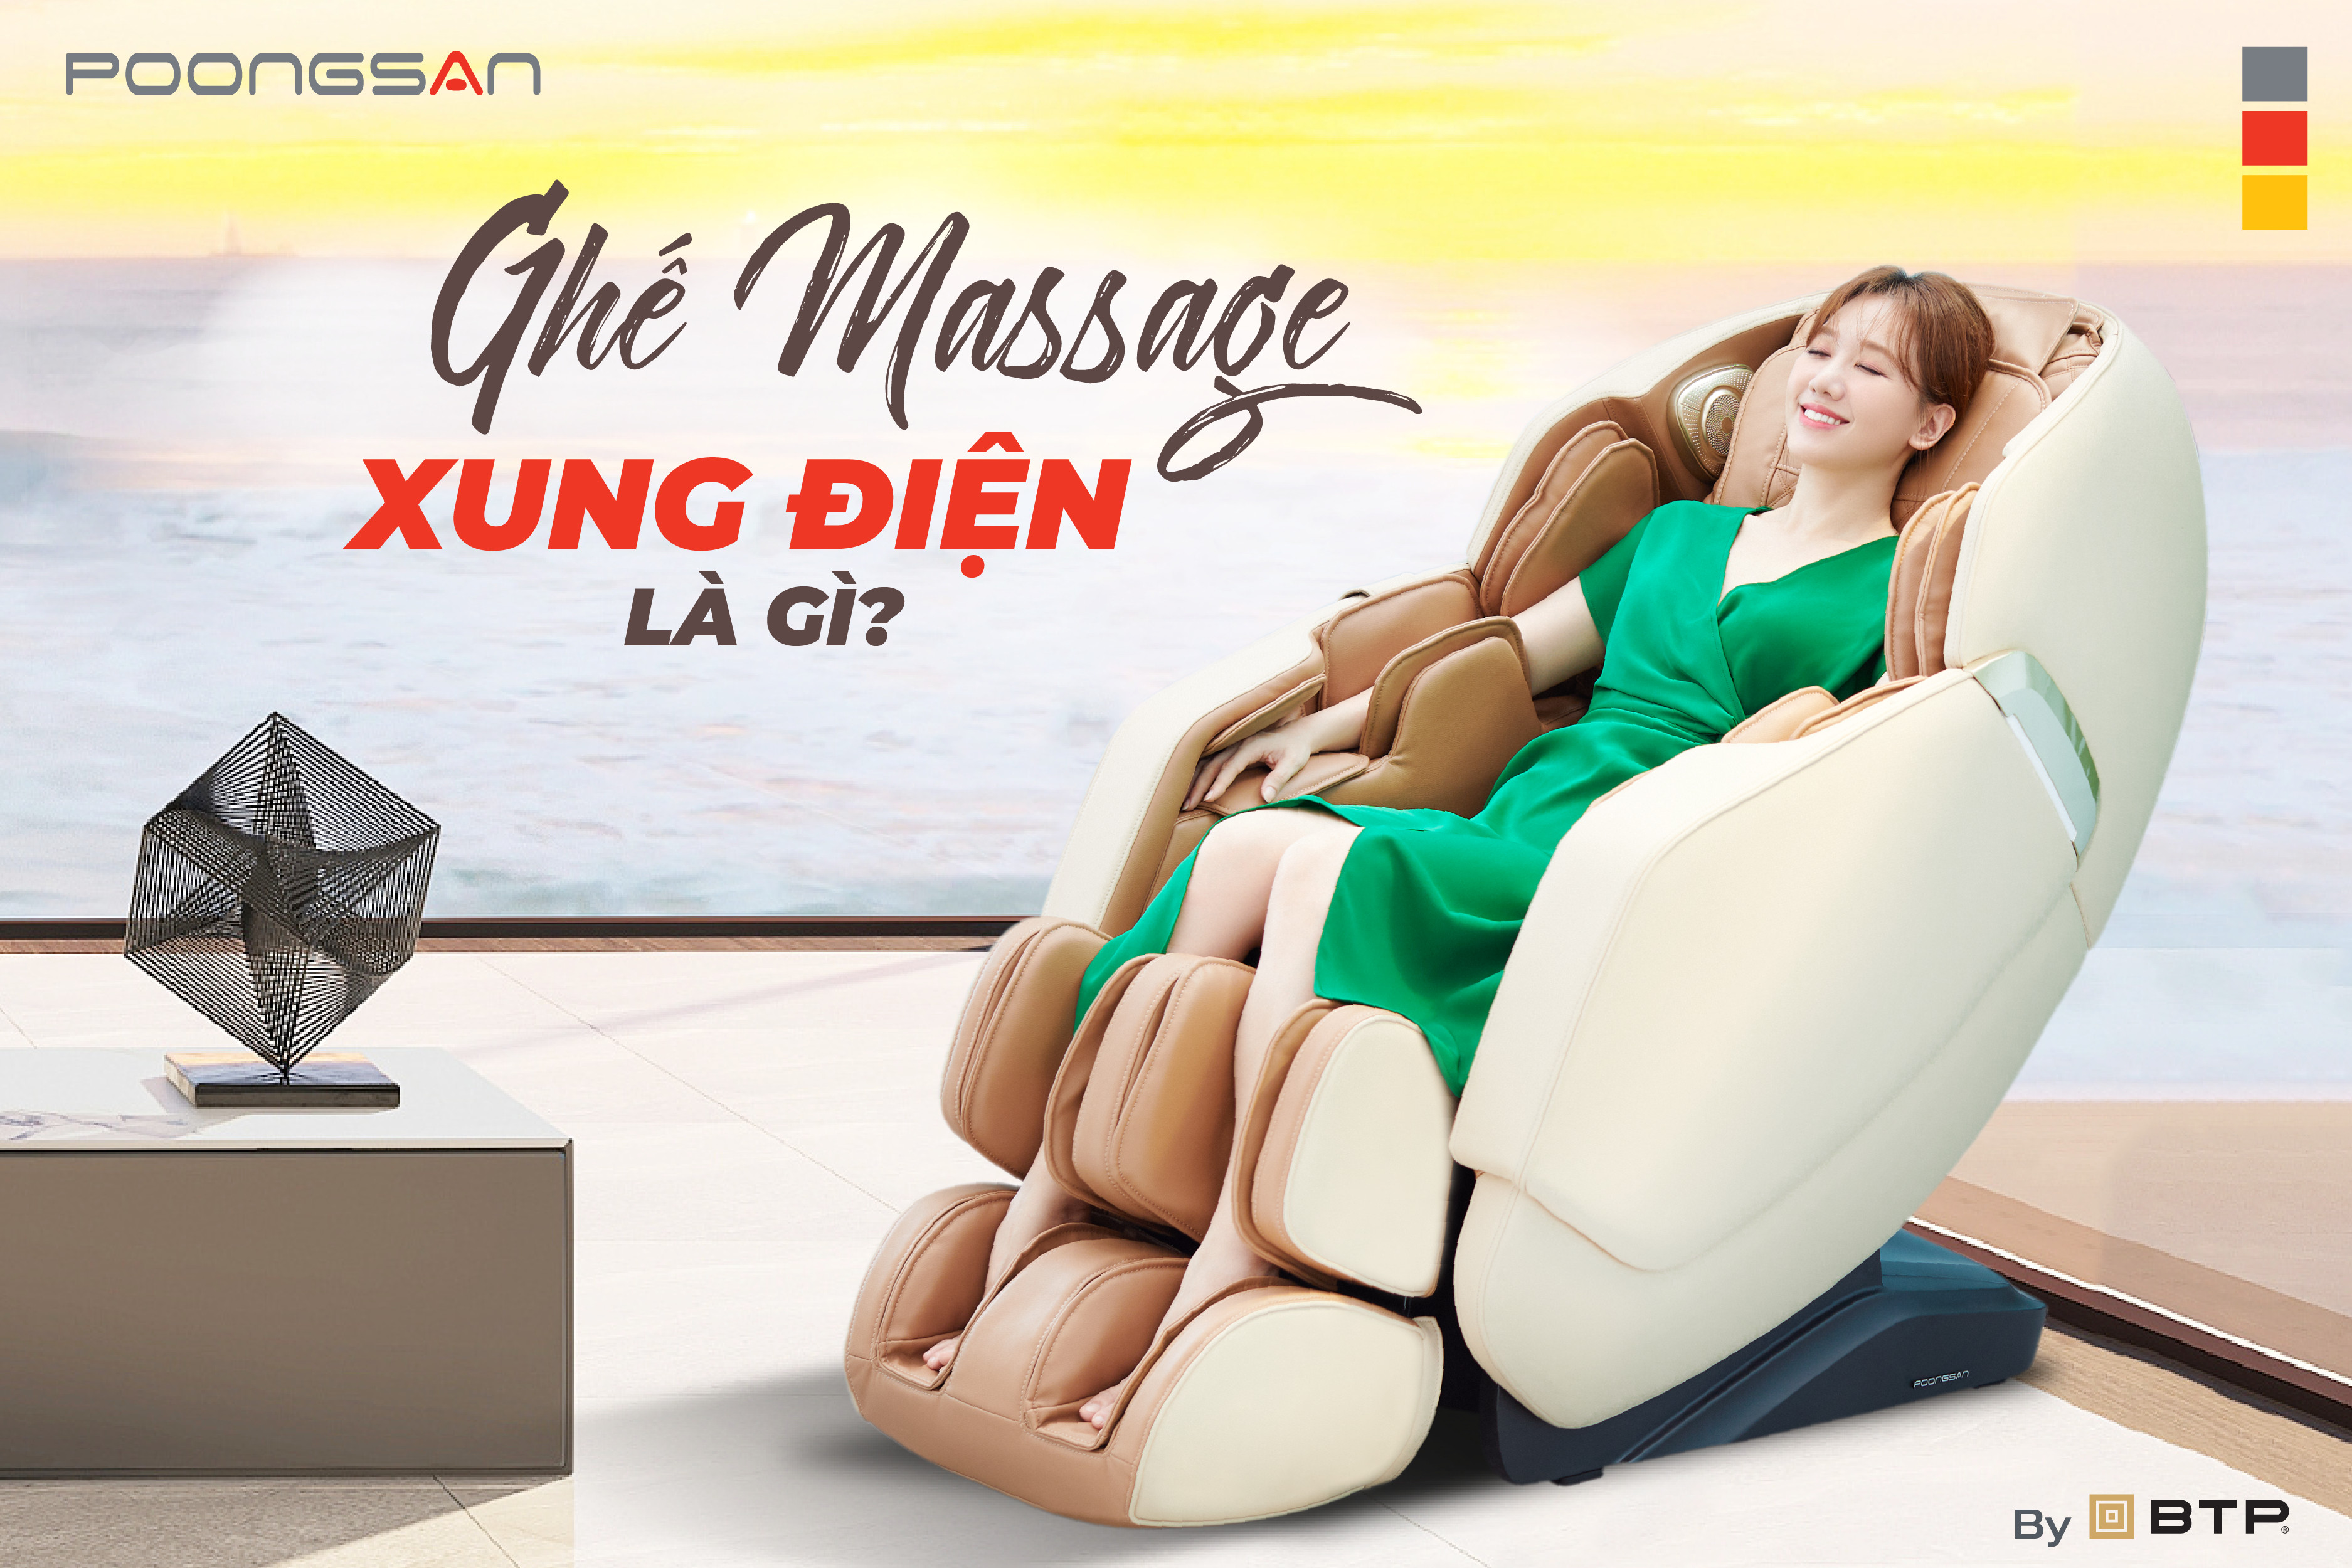 Ghế massage xung điện là gì? Có nên sử dụng ghế massage xung điện là gì?